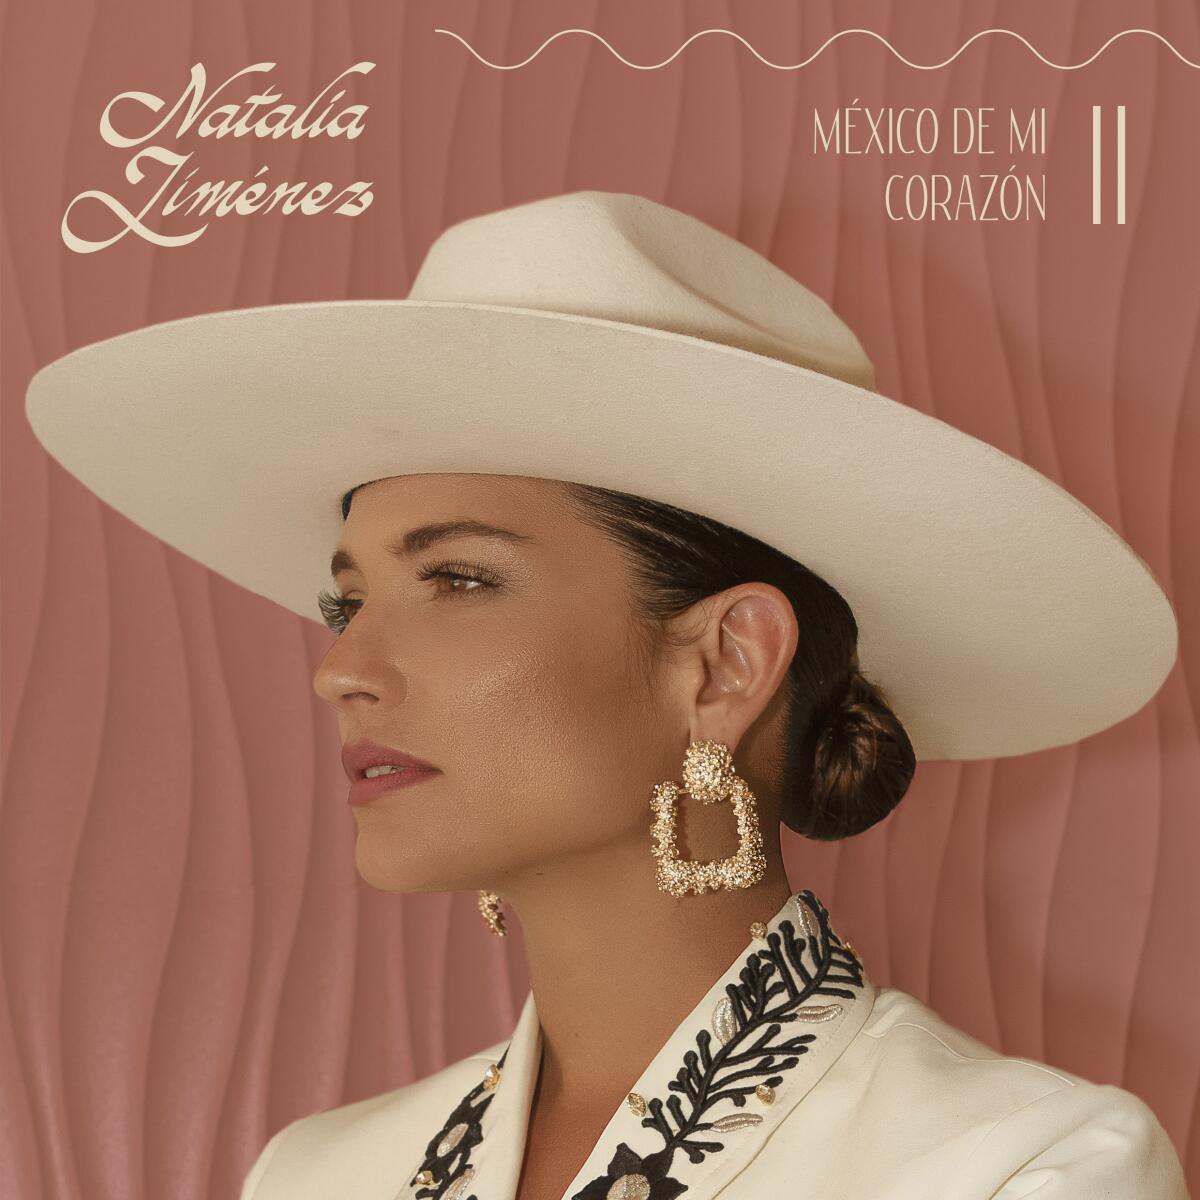  la portada del nuevo álbum de Natalia Jiménez, "México de mi corazon II". 